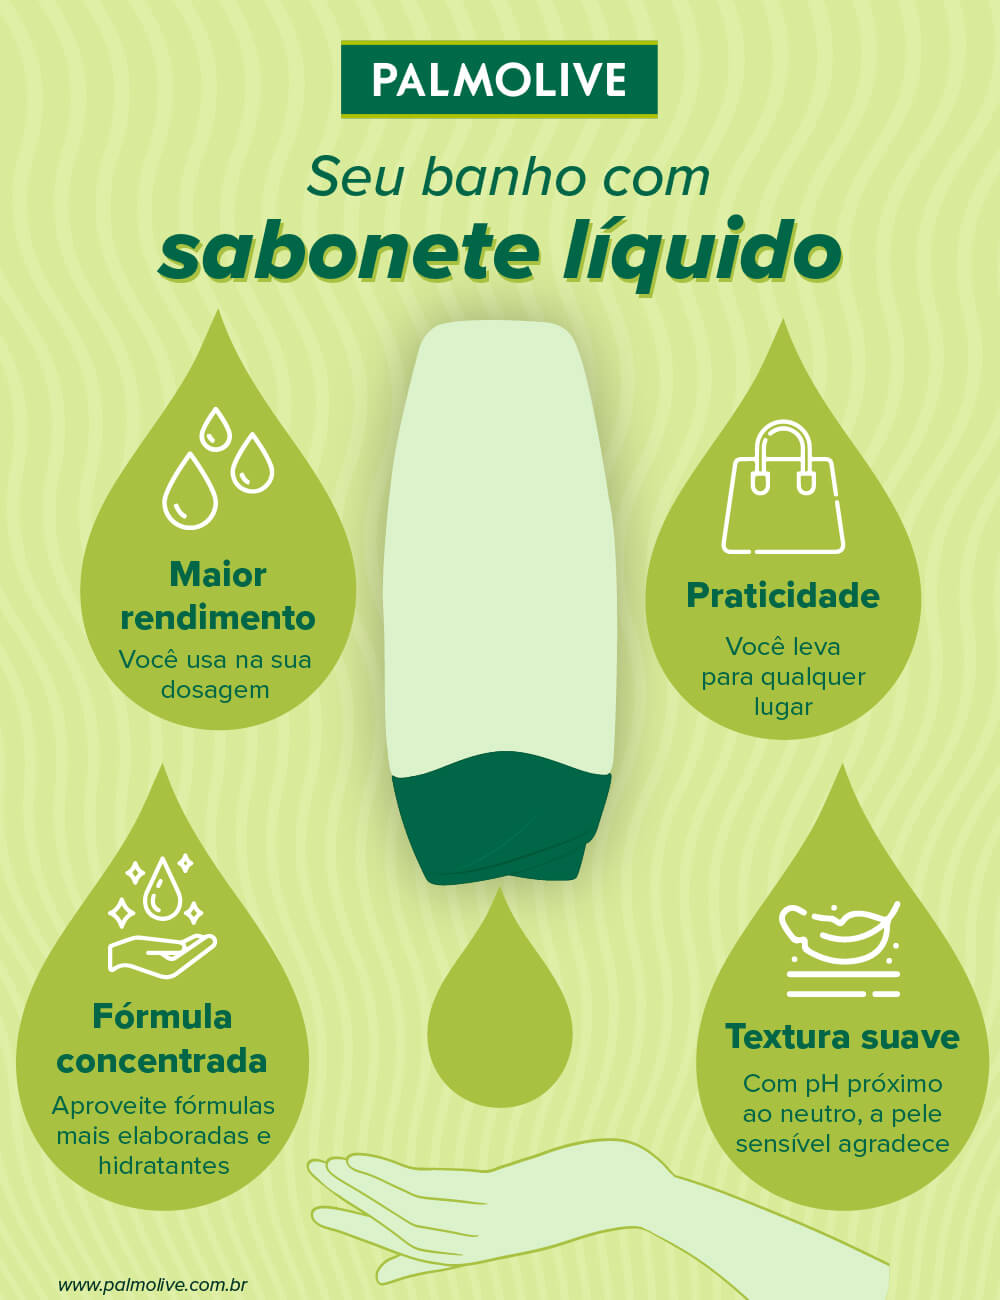 Infográfico de Palmolive com as vantagens do banho com sabonete líquido: maior rendimento, praticidade, fórmula concentrada e textura suave.